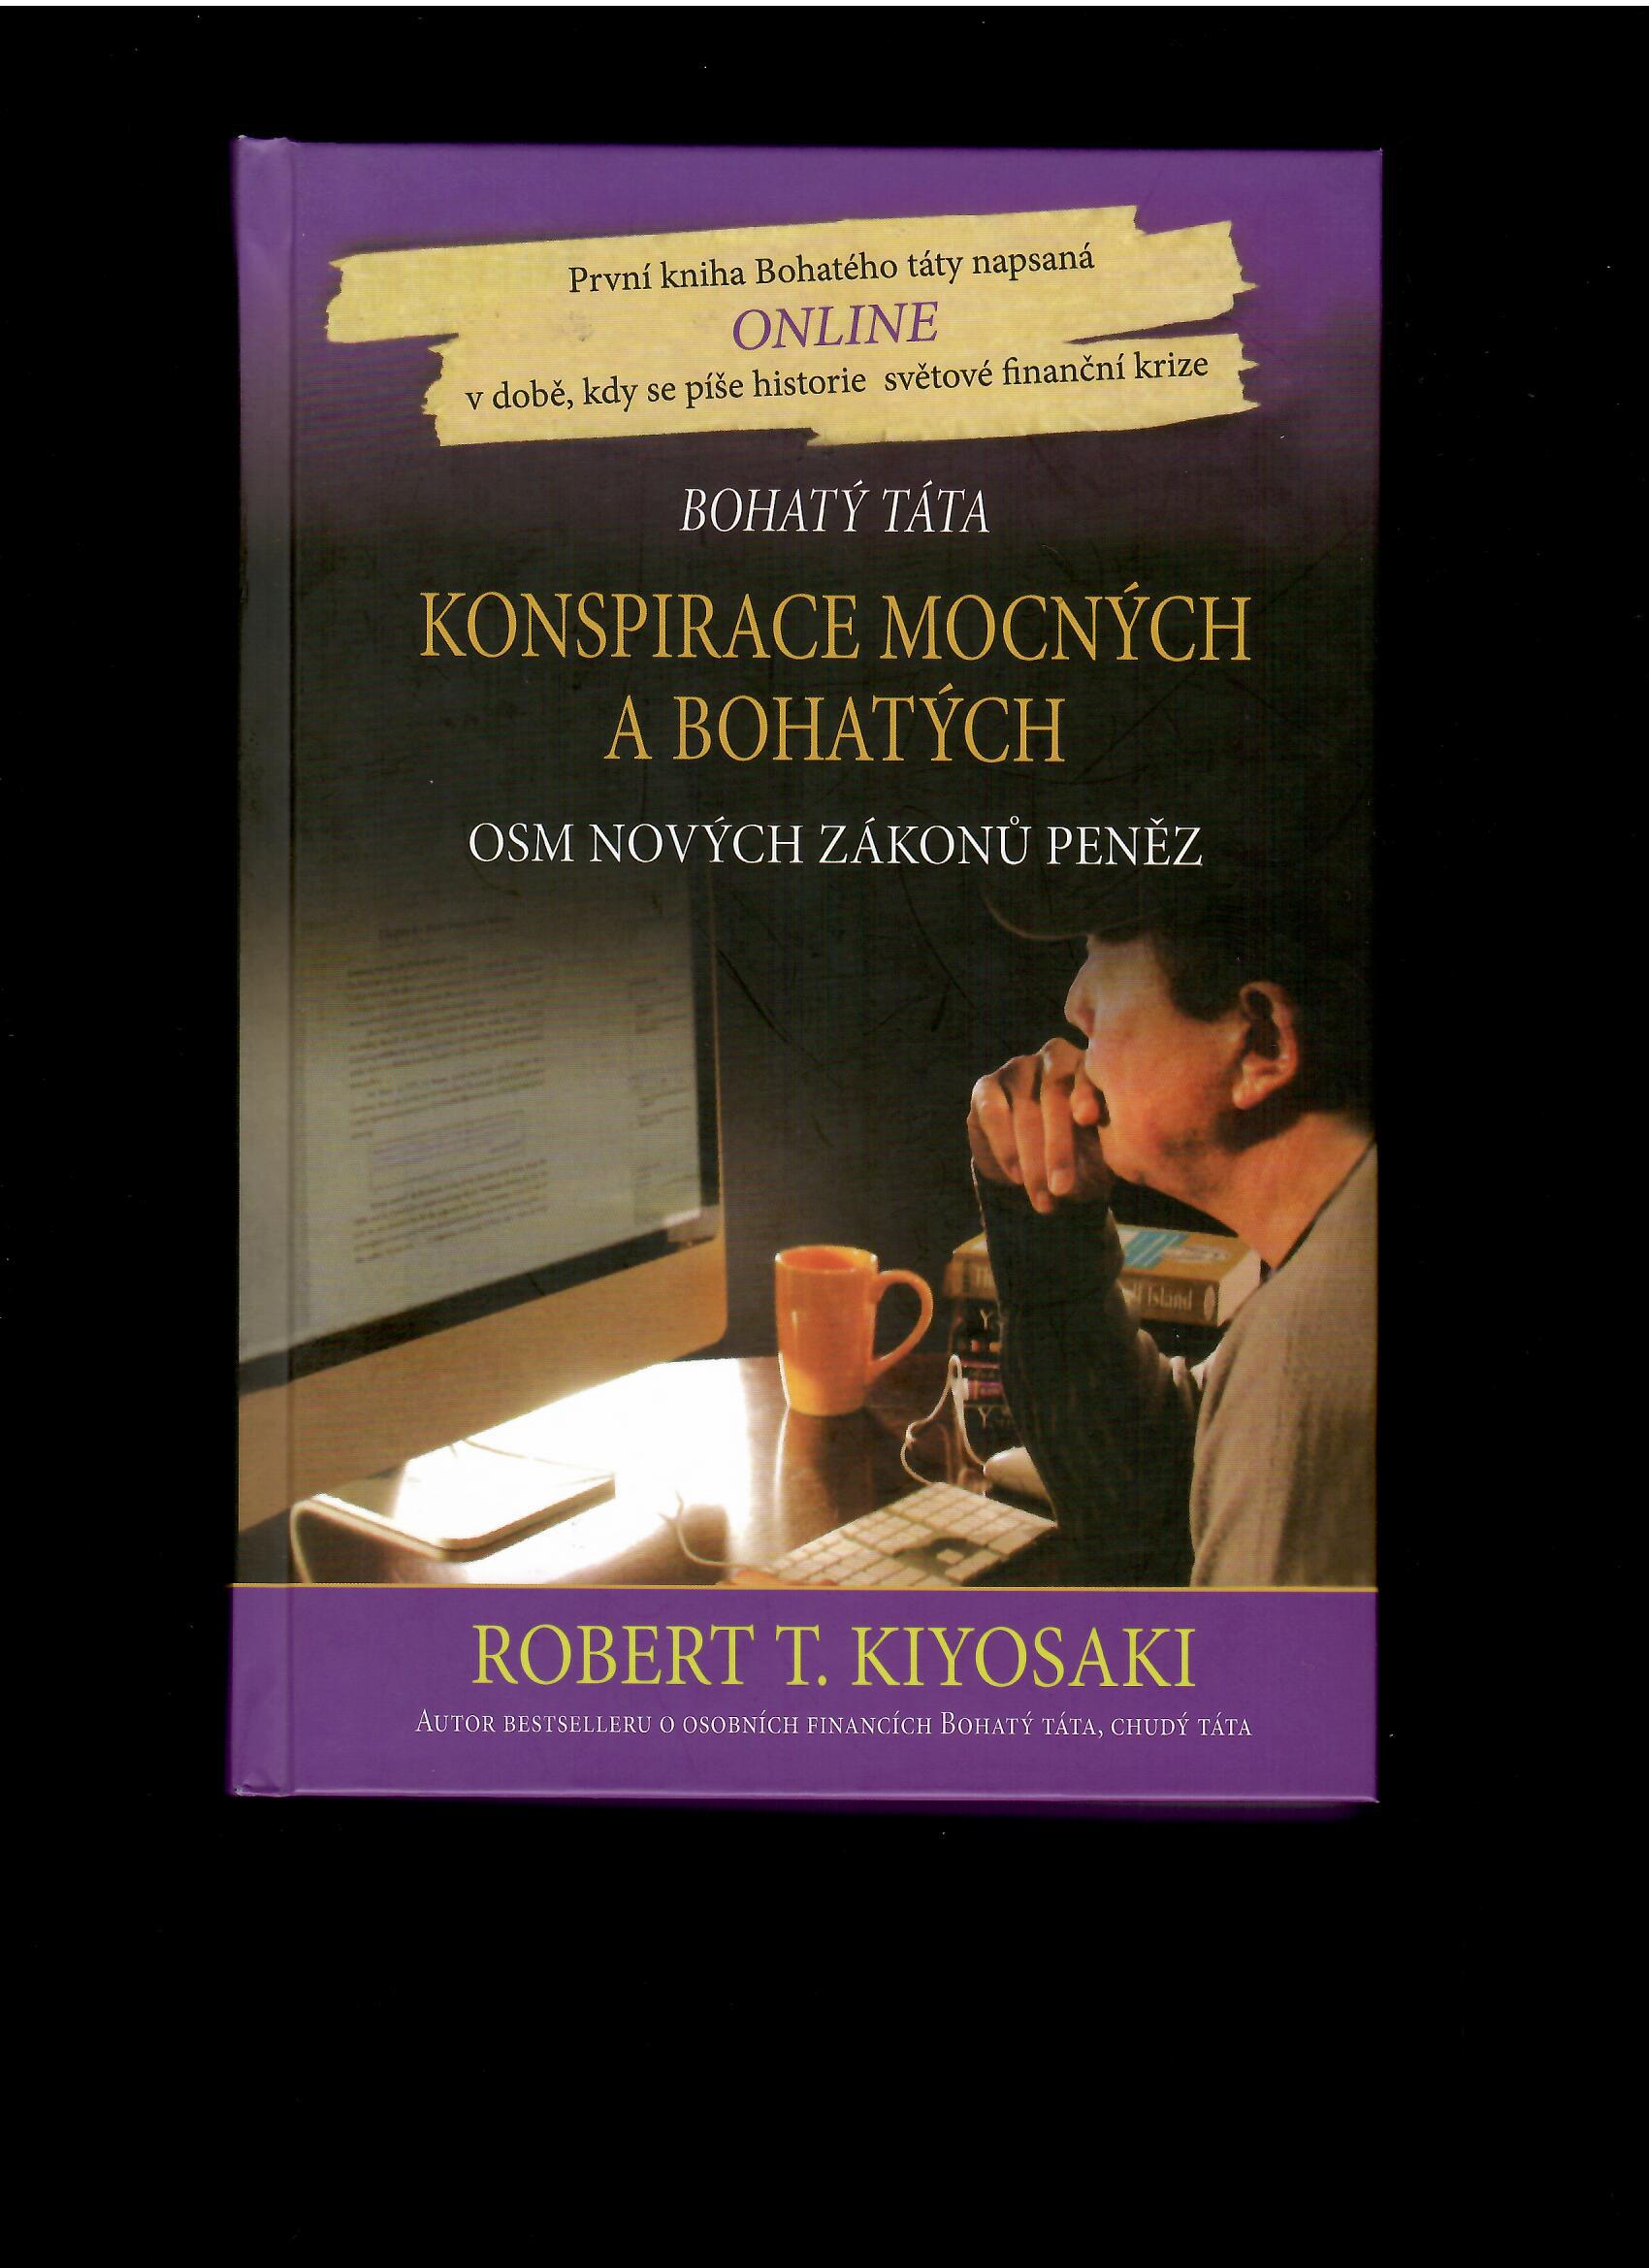 Robert Kiyosaki: Konspirace mocných a bohatých